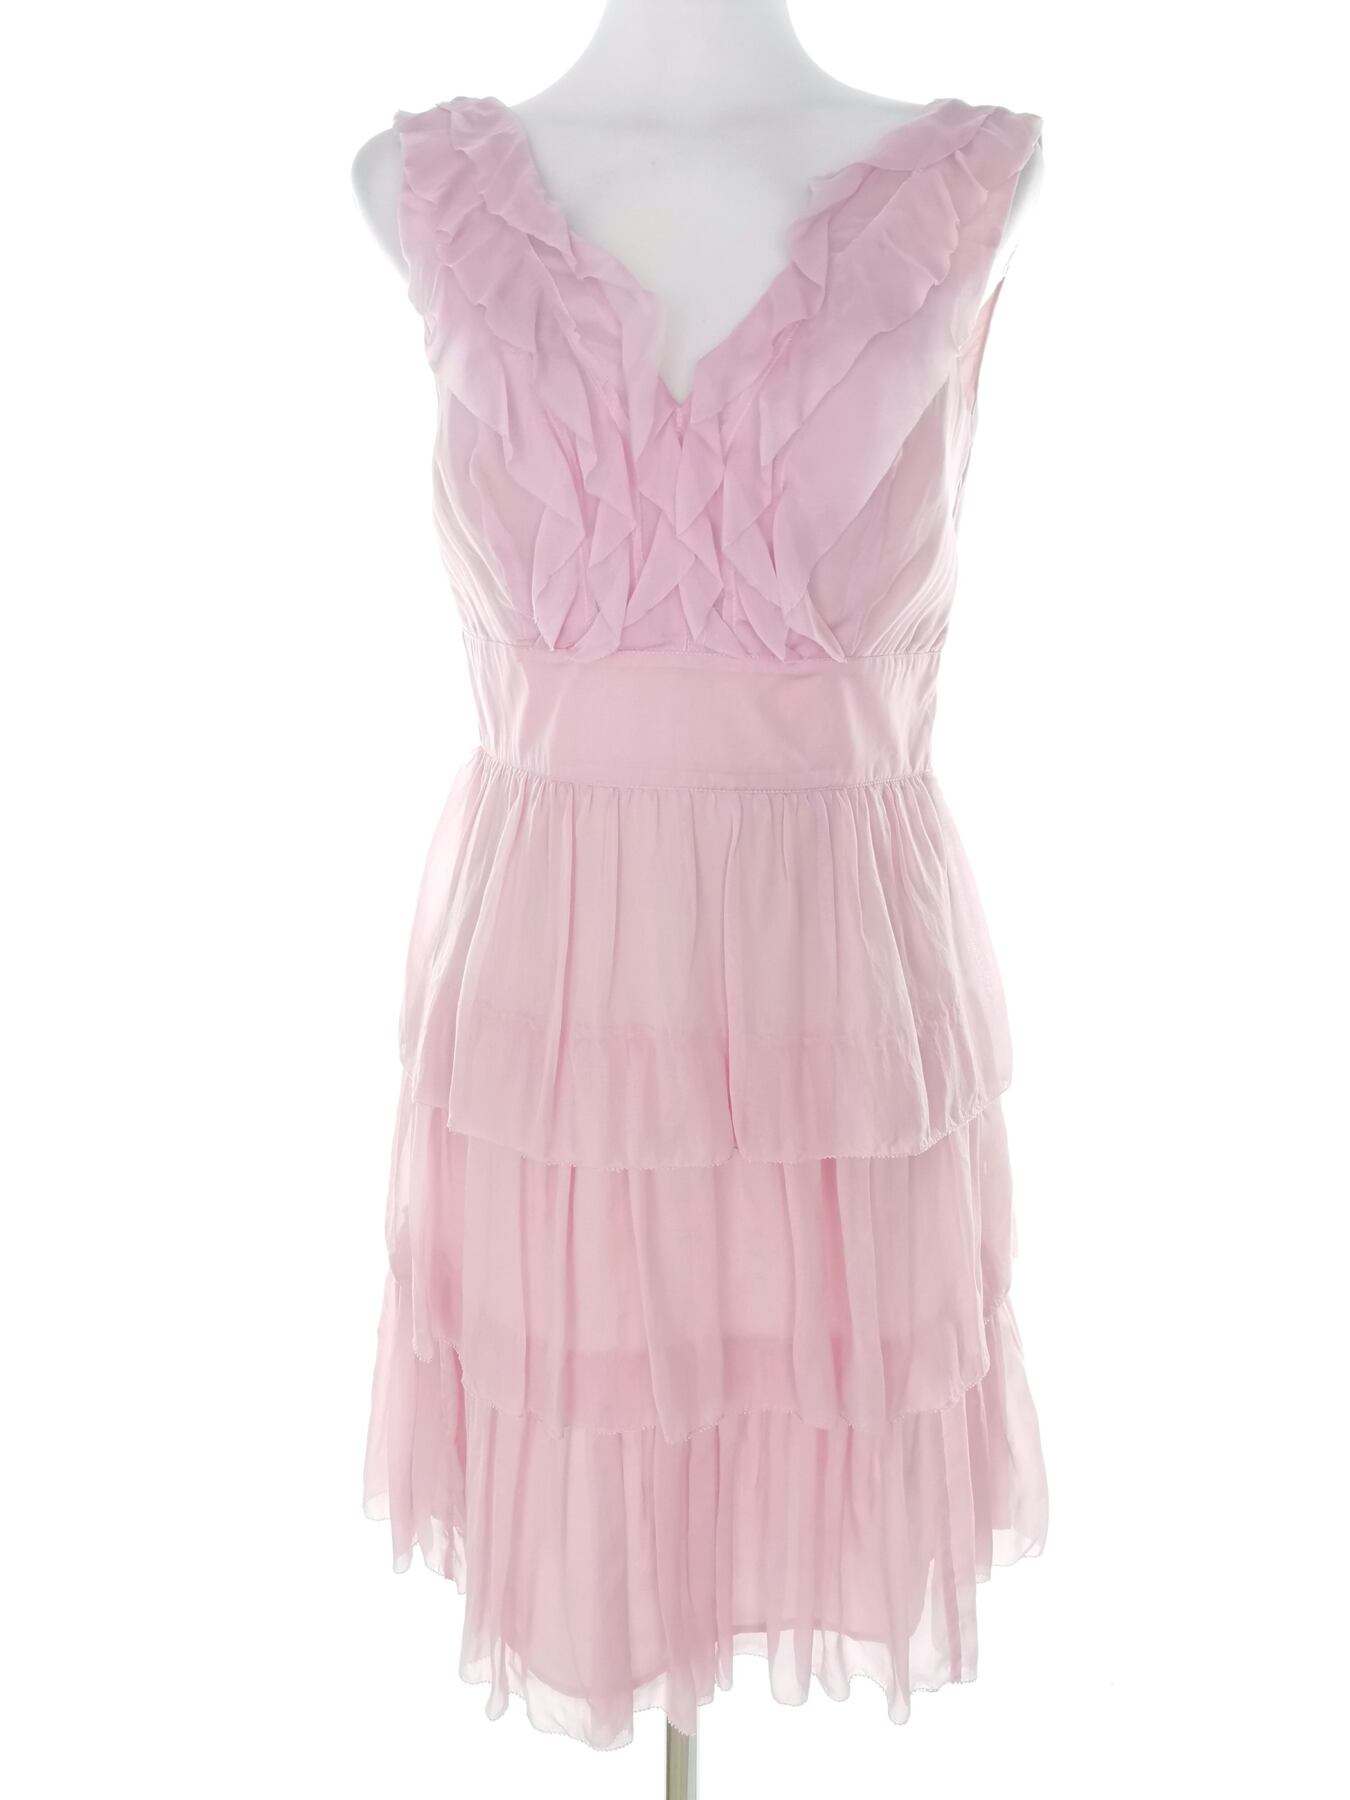 Warehouse Rozmiar 10 (36) Kolor Różowy W serek Suknia Balowa Sukienka Wieczorowa Bezrękawnik Do Kolan Materiał Jedwab 100%